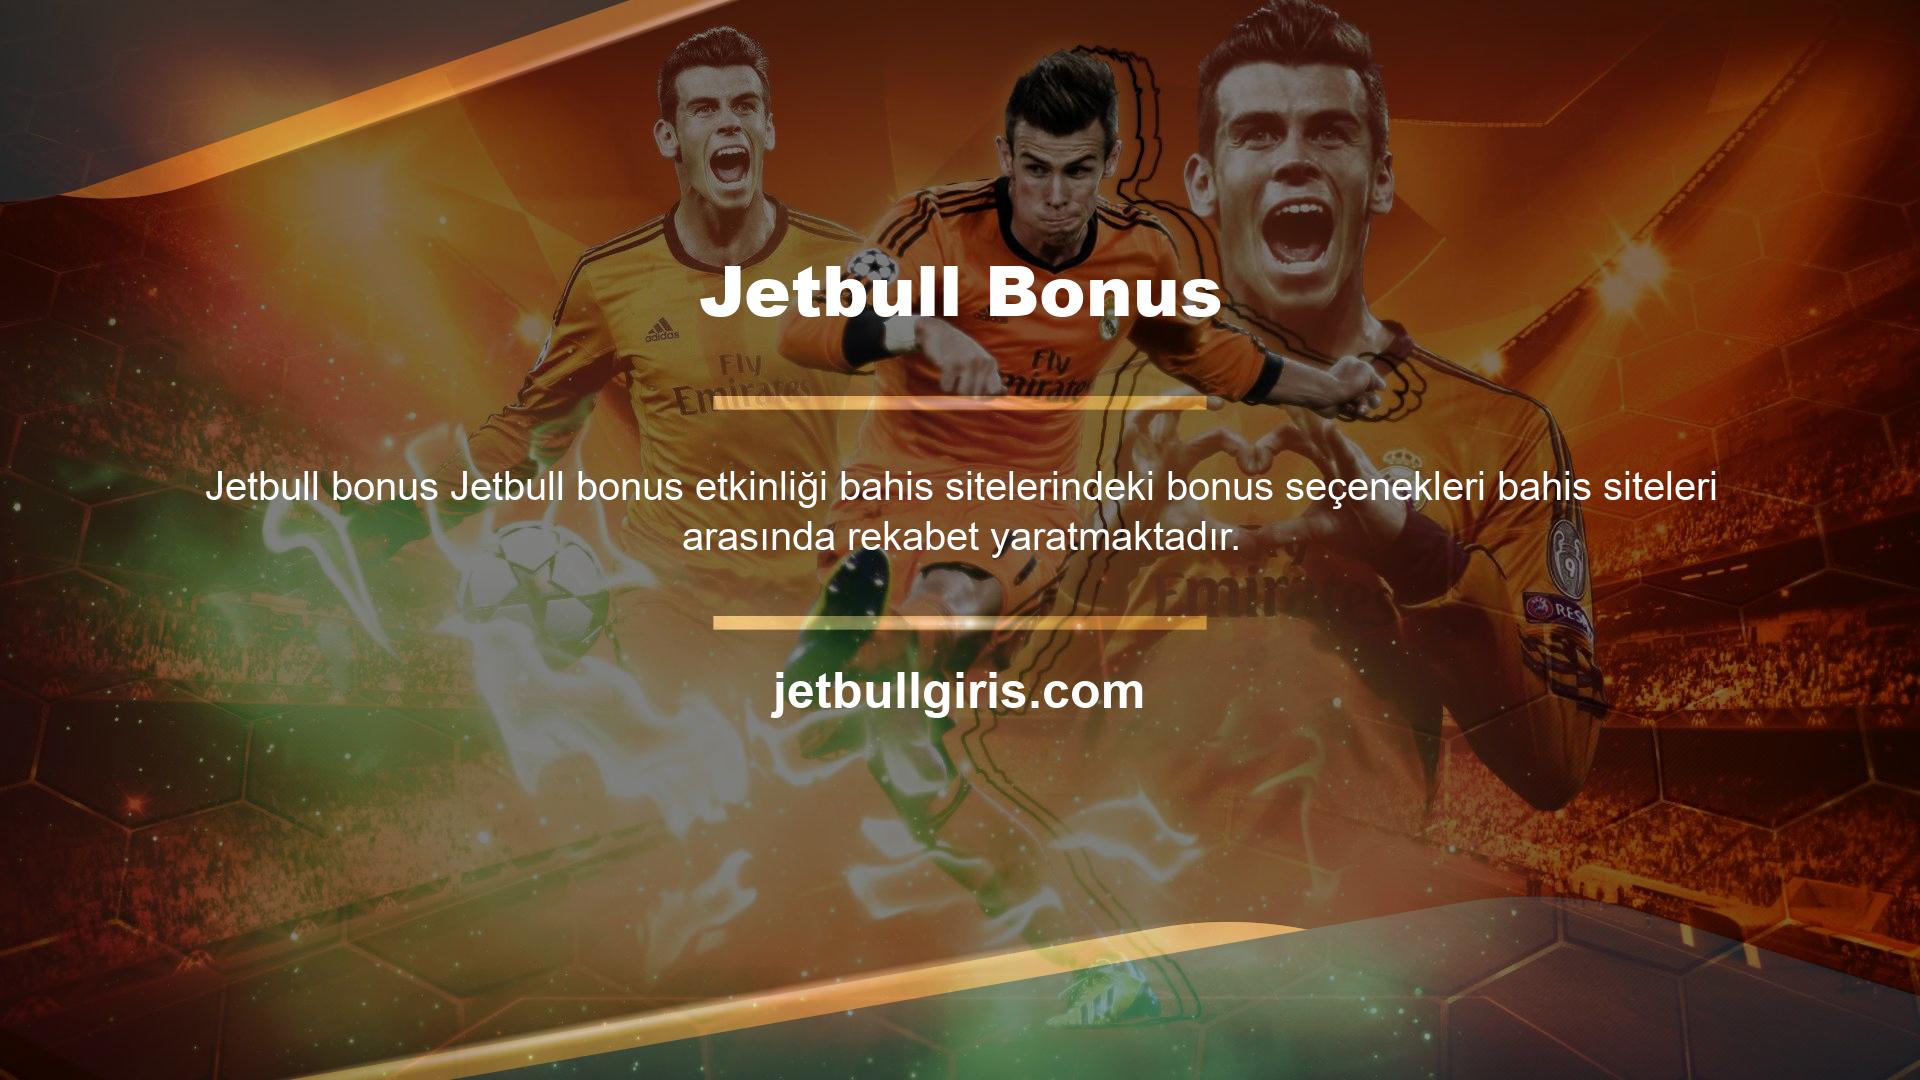 Jetbull bonus faaliyetleri kapsamında kullanıcıların ilgisini çeken hoş geldin bonusları ve para yatırma bonusları başta olmak üzere çeşitli bonus teklifleri kullanıcılara sunulmaktadır